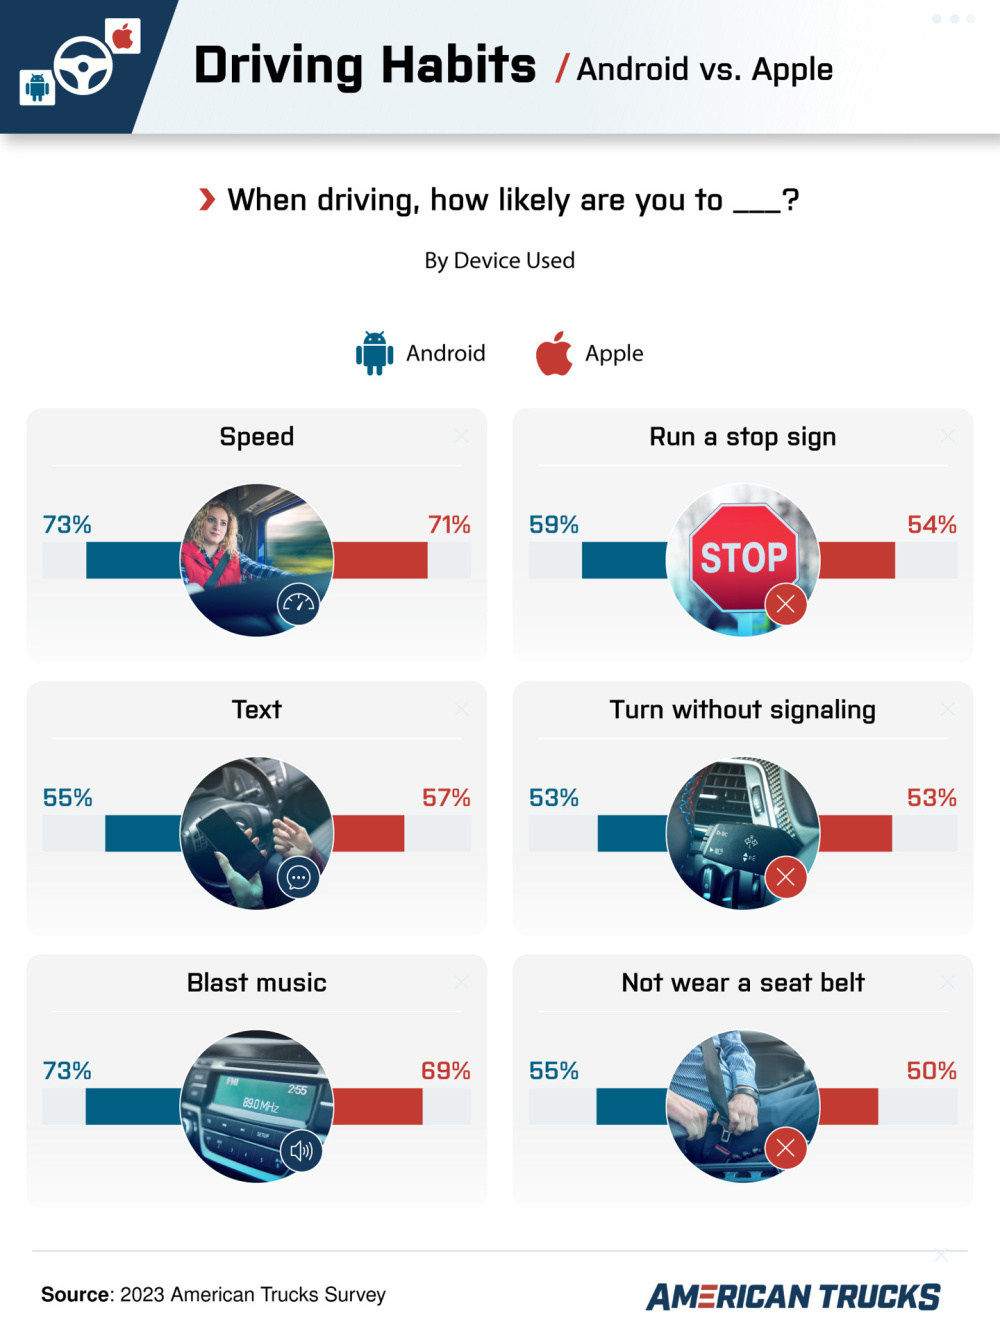 调查显示使用 iPhone 的司机比使用安卓手机的更容易出现路怒症